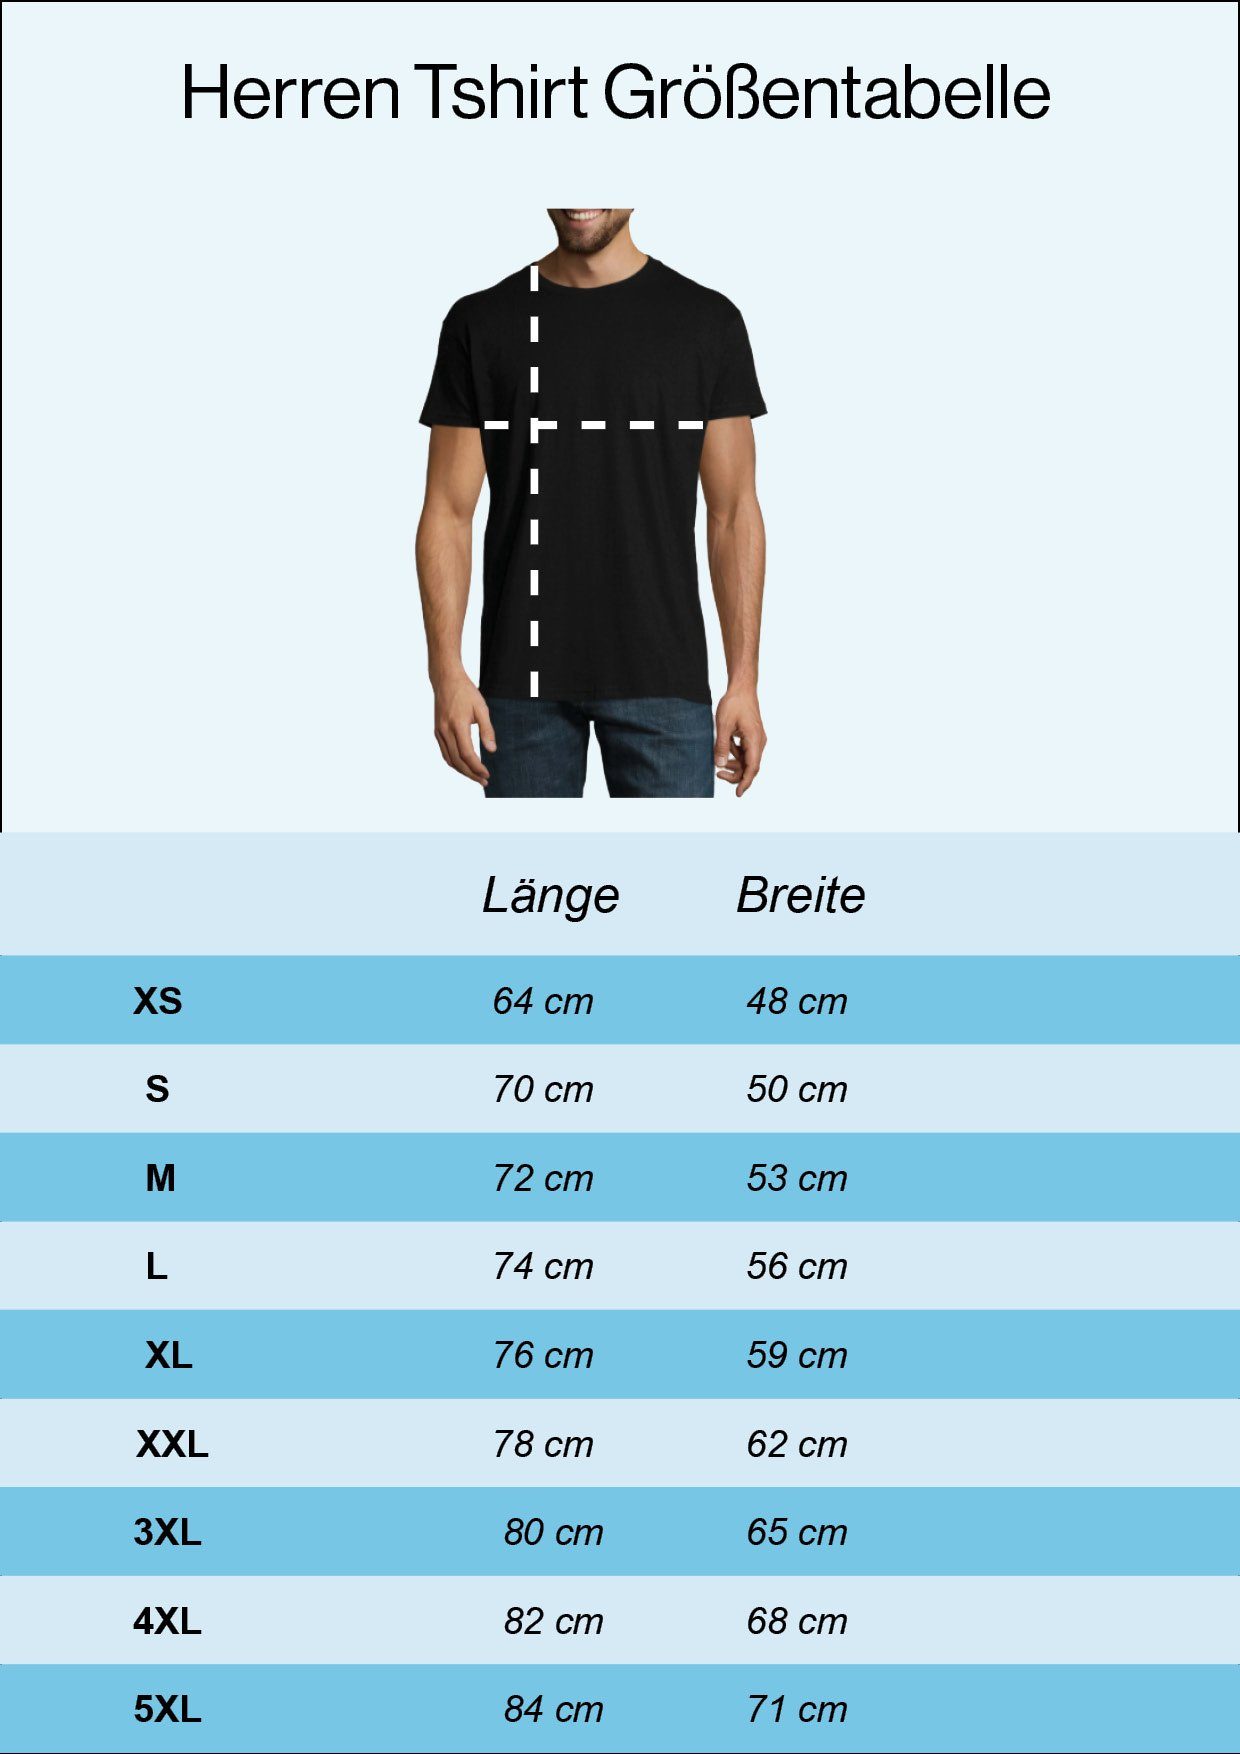 T-Shirt Herren lustigem T-Shirt mit Frontprint Burgundy 4:20 Youth Designz